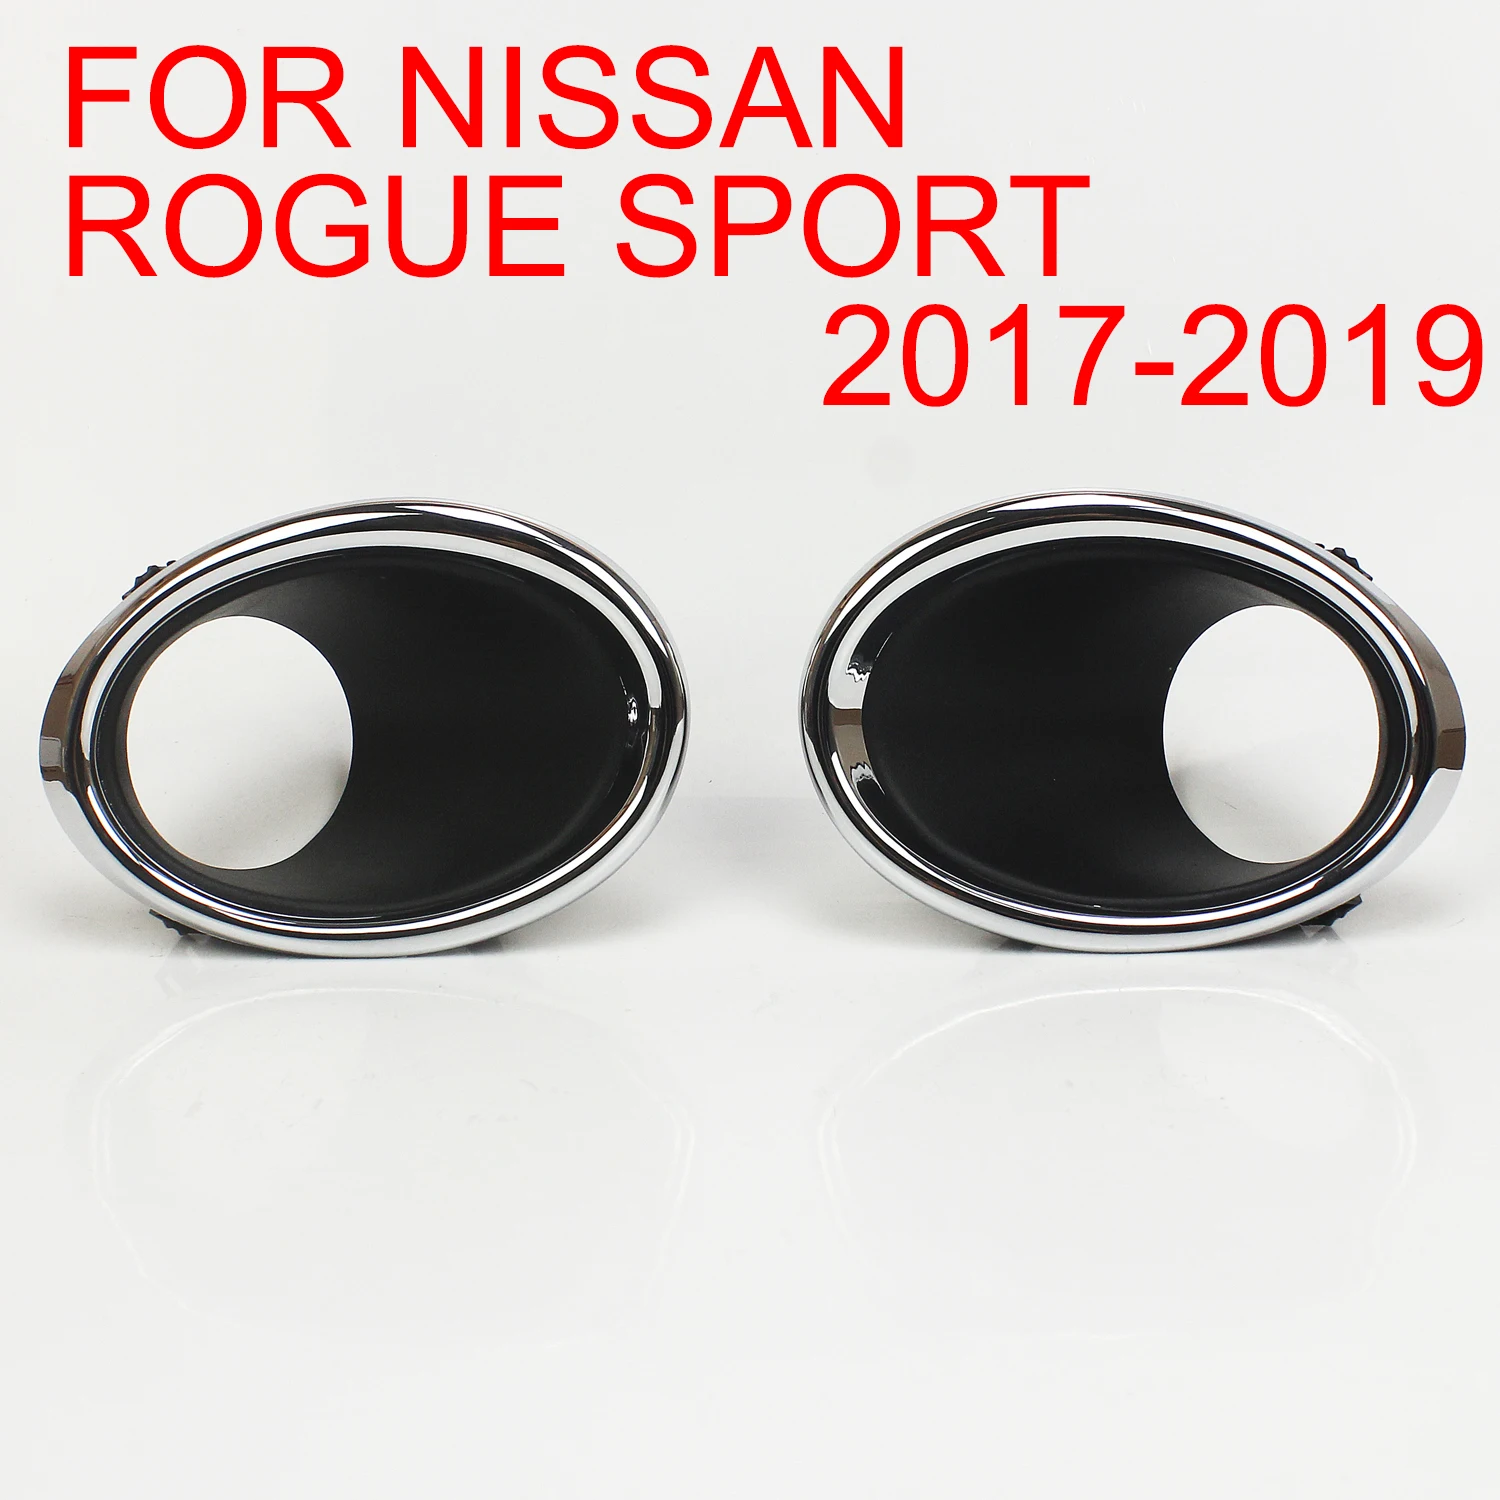 

Передний бампер для Nissan Rogue Sport 2017 2018 2019, противотуманная фоторамка, обшивка для водителя и пассажира с хромированной частью